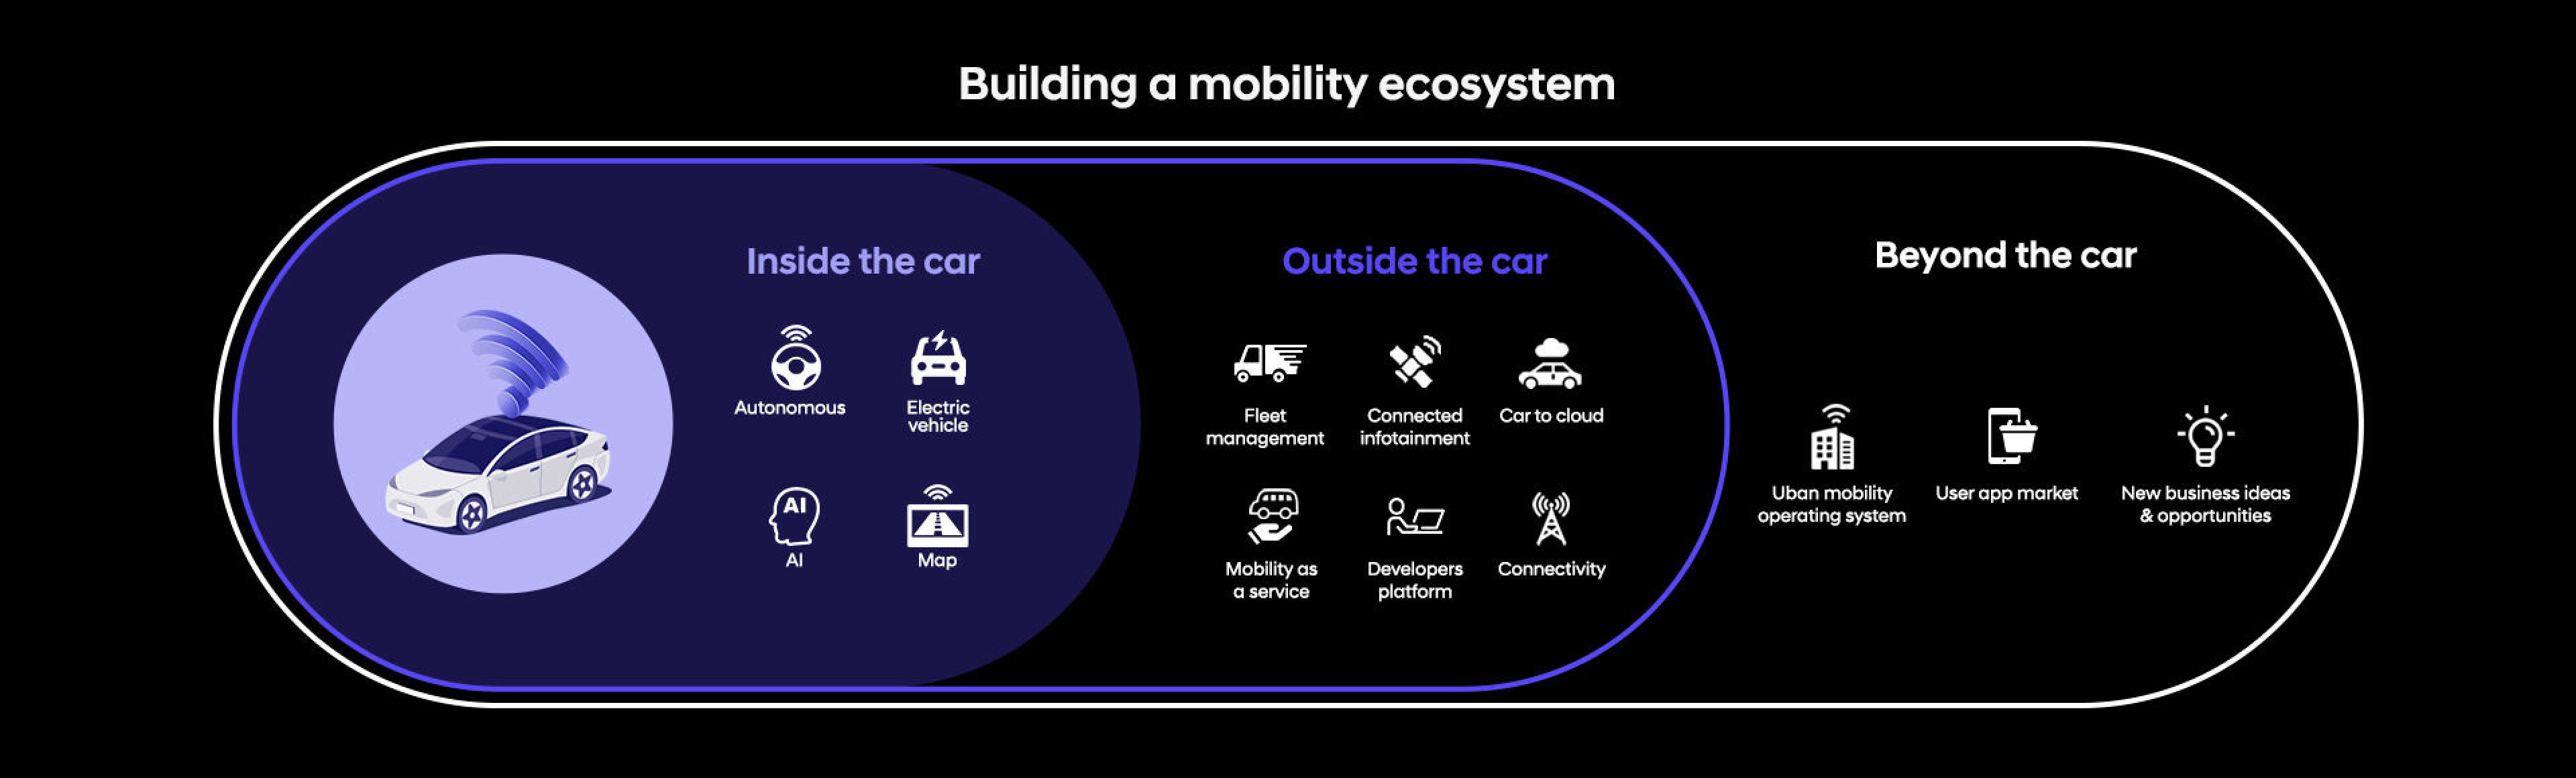 Hyundaiの未来モビリティが持つ無限の可能性を示す3つの連結段階を表現したピクトグラフの横に「Building a mobility ecosystem」という文句が書かれています。  -  ヒョンデモビリティジャパン ブランドストーリー